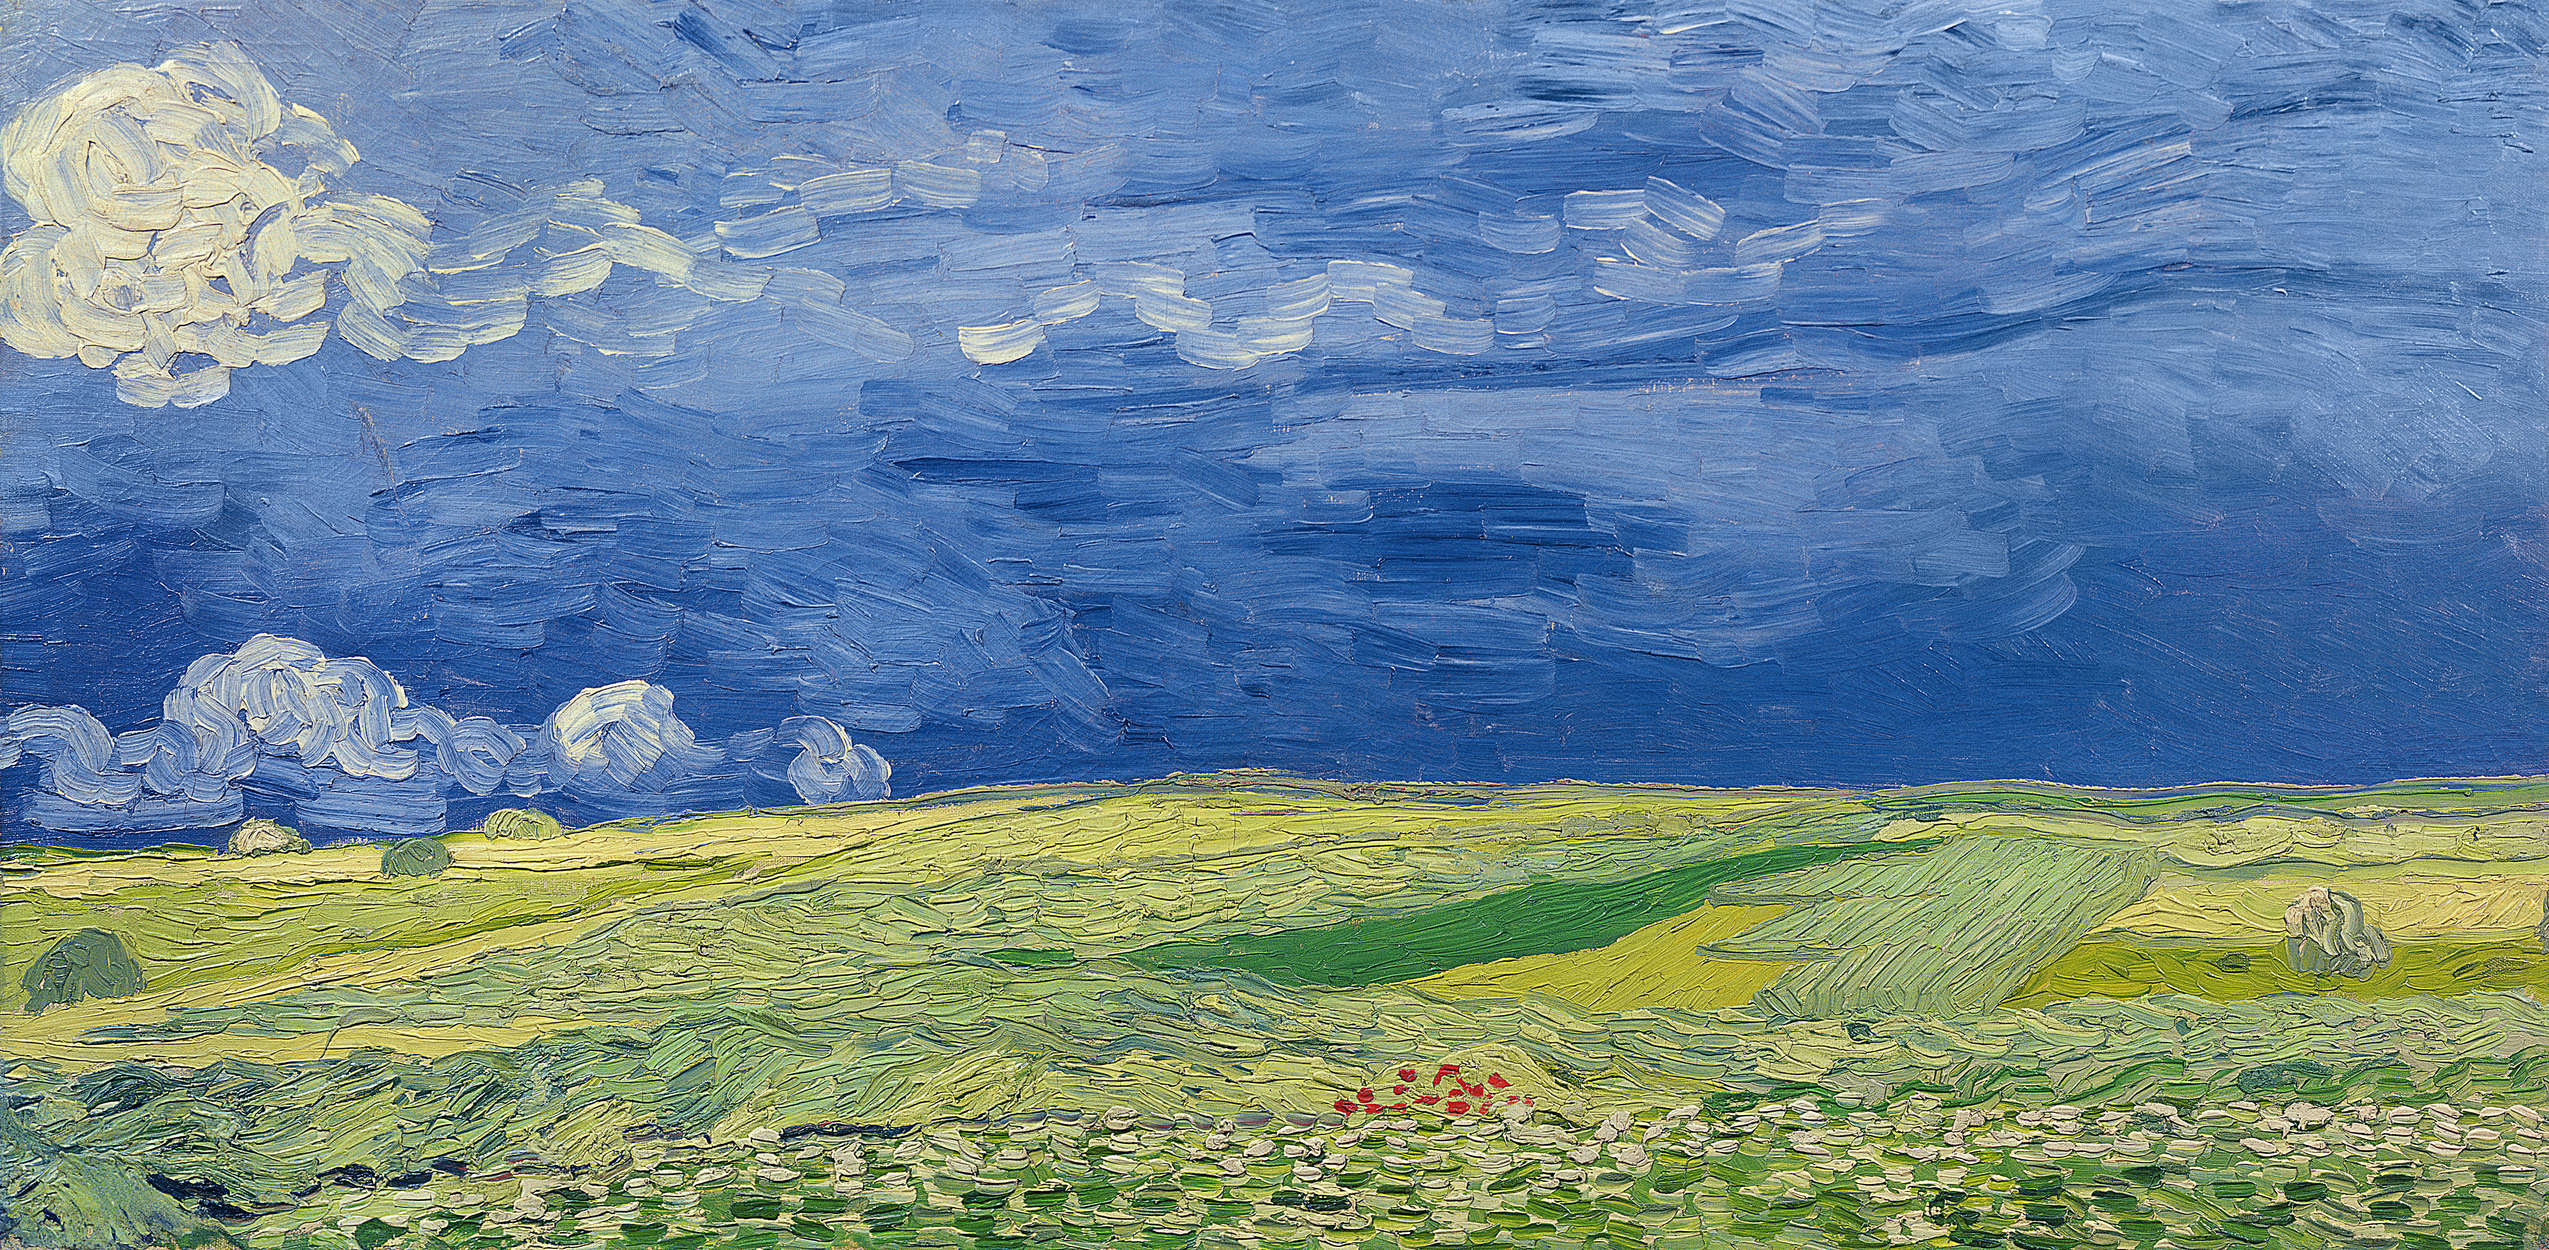             Fototapete "Weizenfelder unter Gewitterwolken" von Vincent van Gogh
        